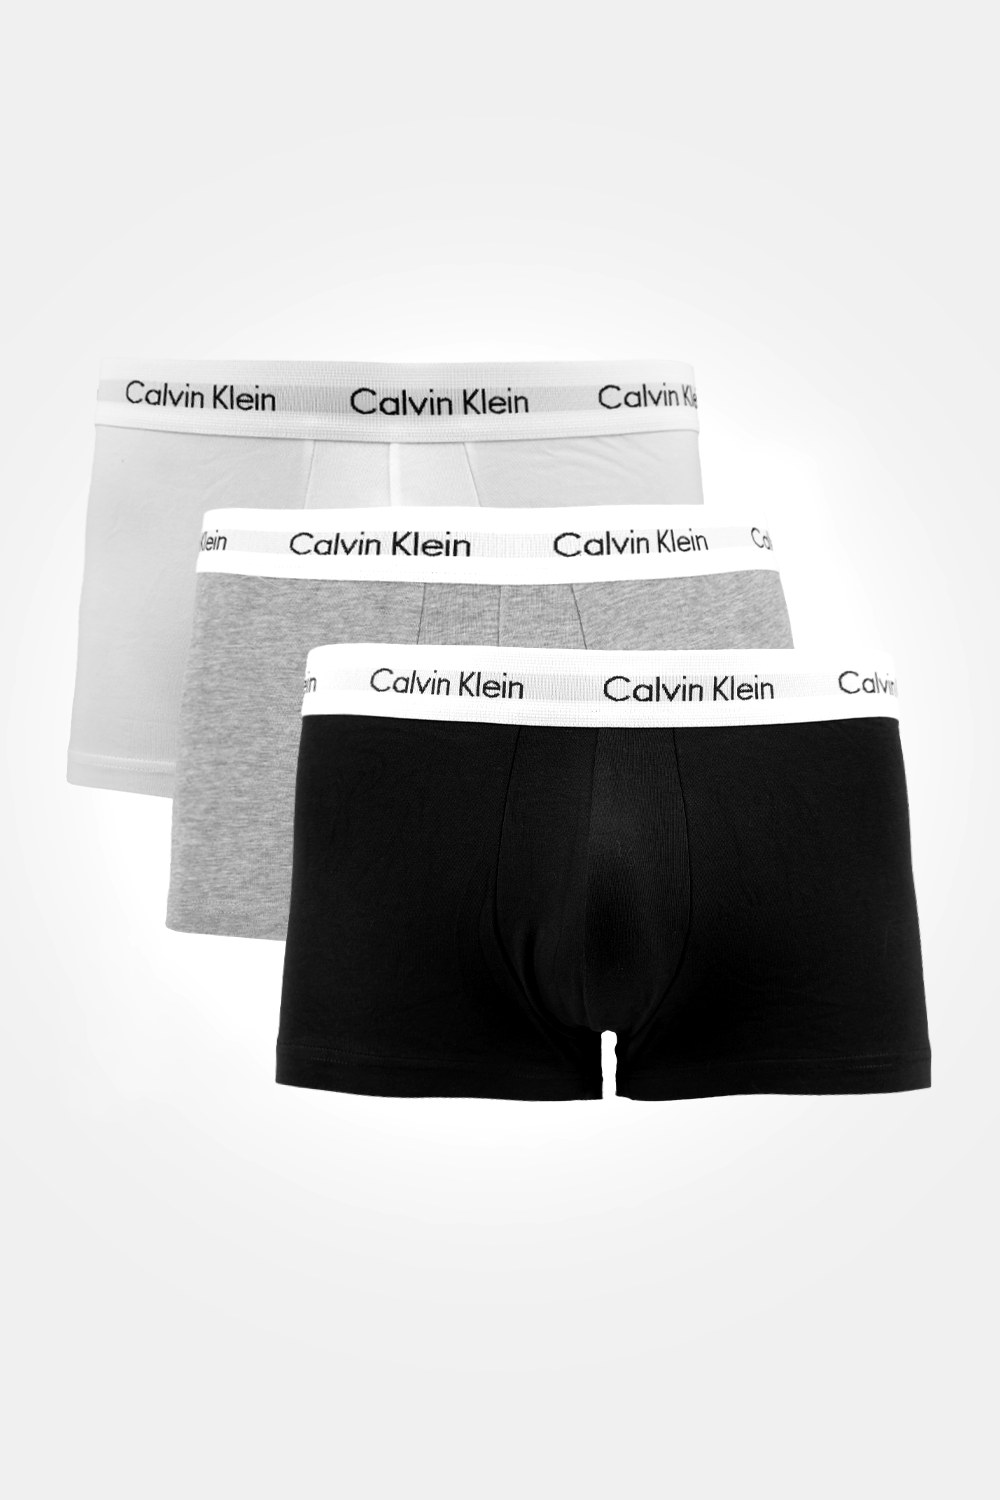 Calvin Klein - מארז בוקסרים Low Rise לגברים בצבע אפור לבן ושחור - MASHBIR//365